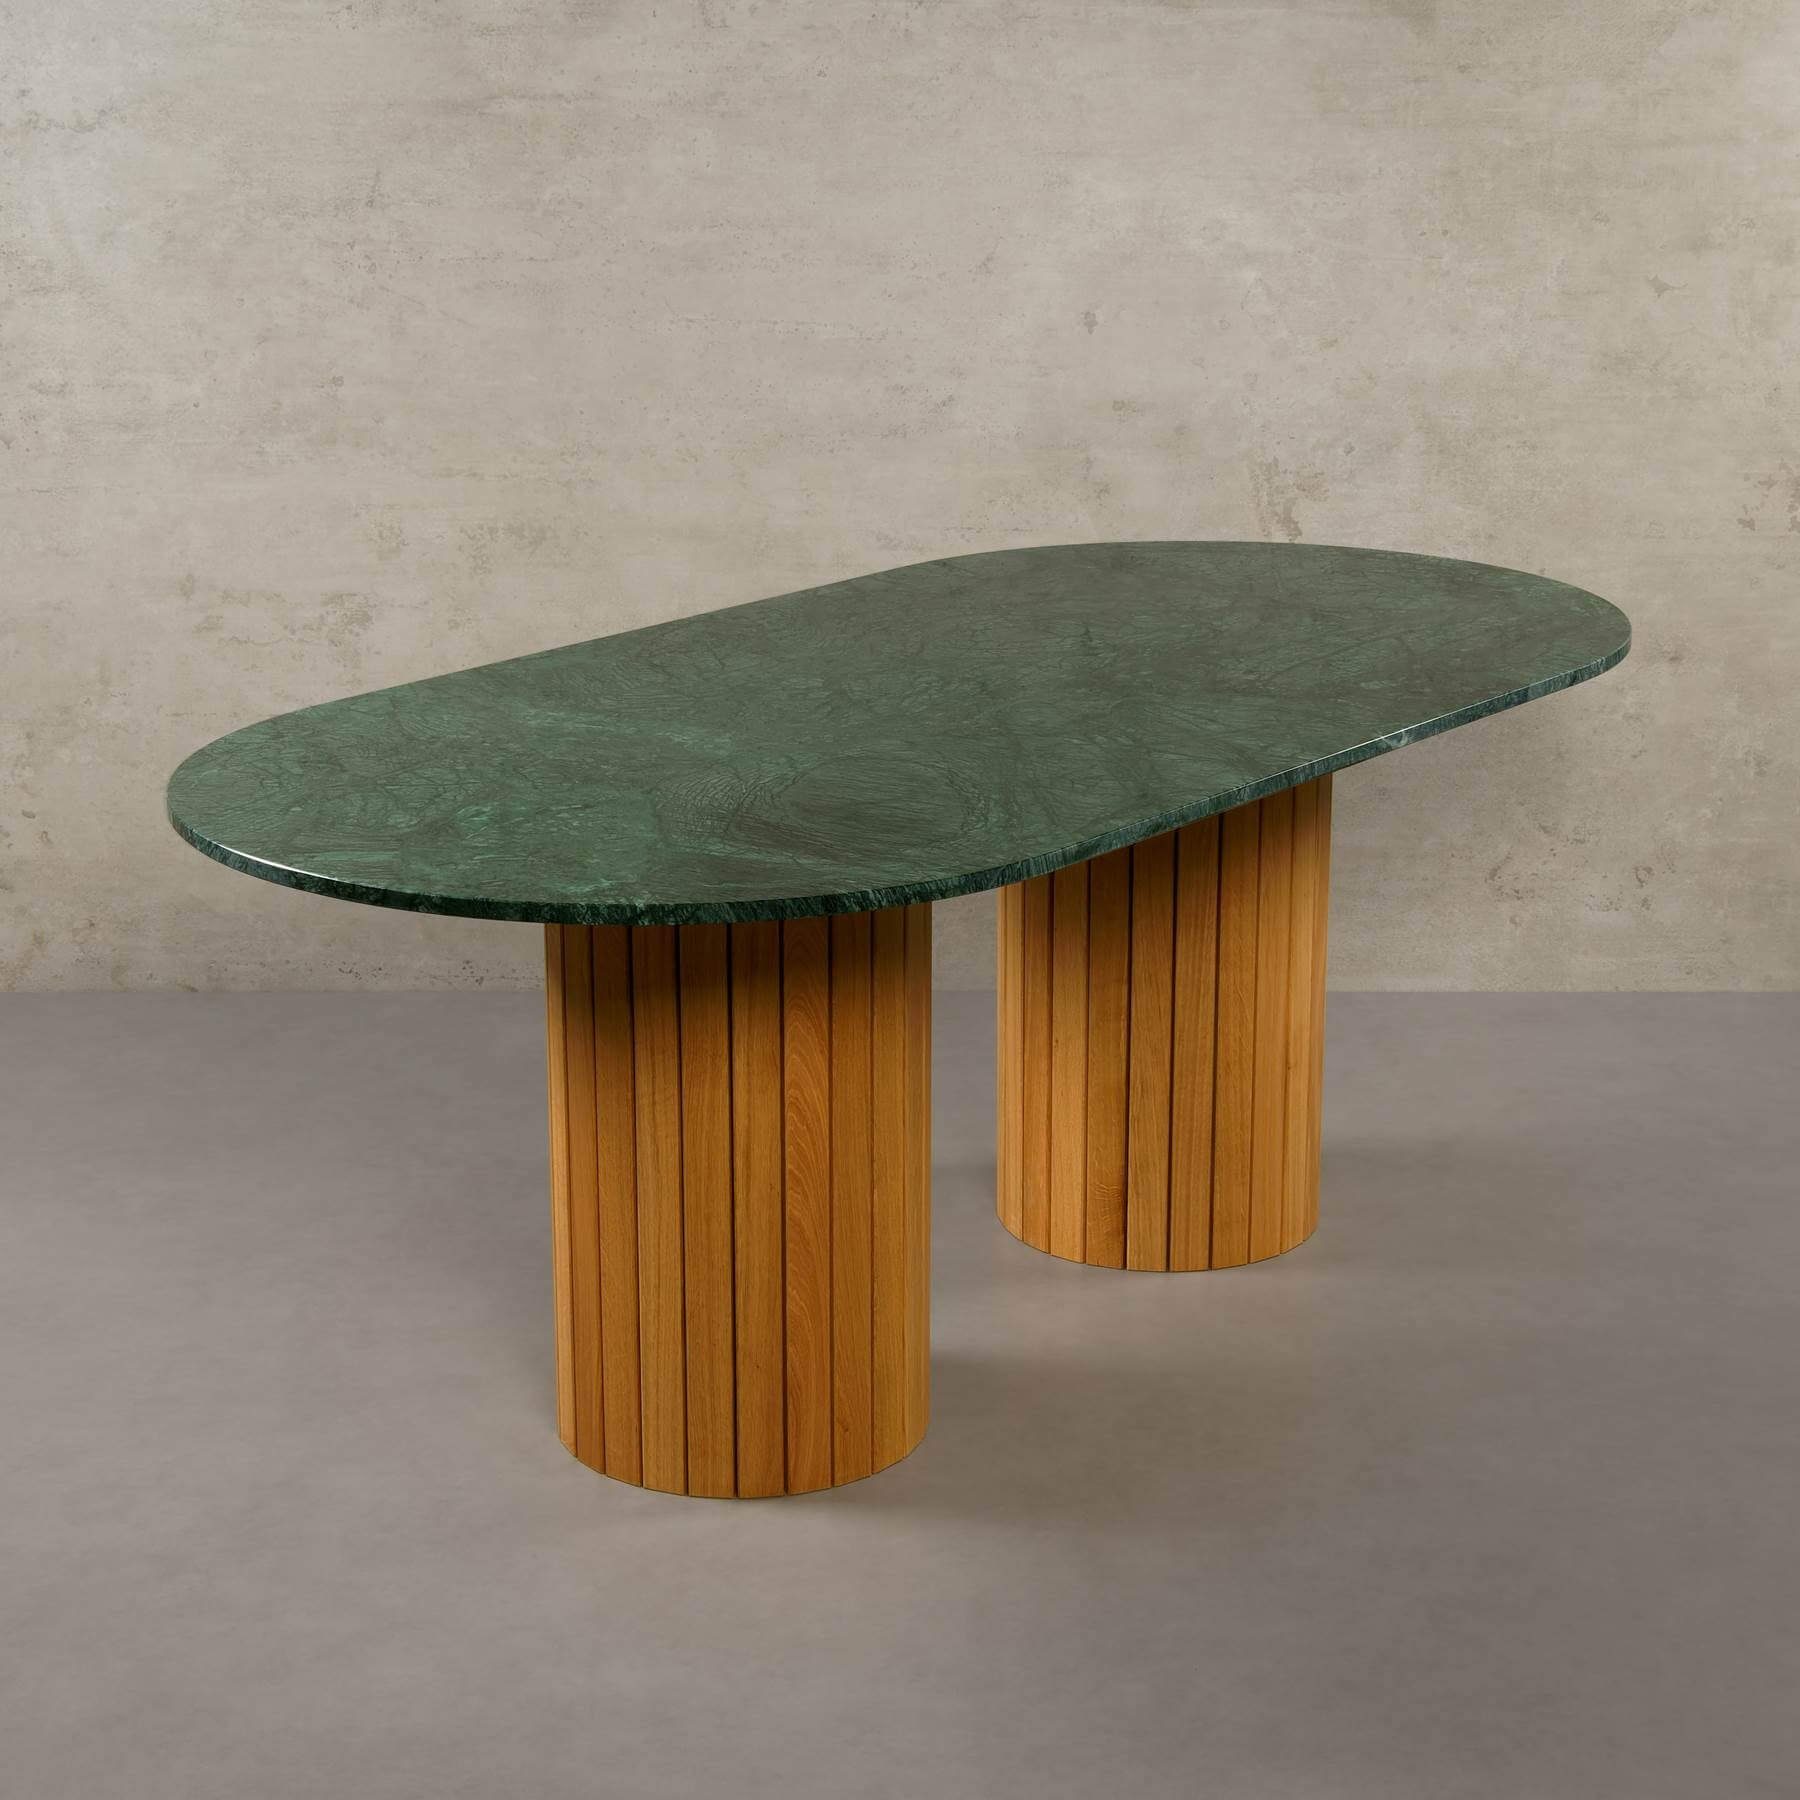 MAGNA Atelier Esstisch Montana mit ECHTEM MARMOR, Esstisch Tisch rund, Eichenholz Gestell, 200x100x76cm Verde Guatemala